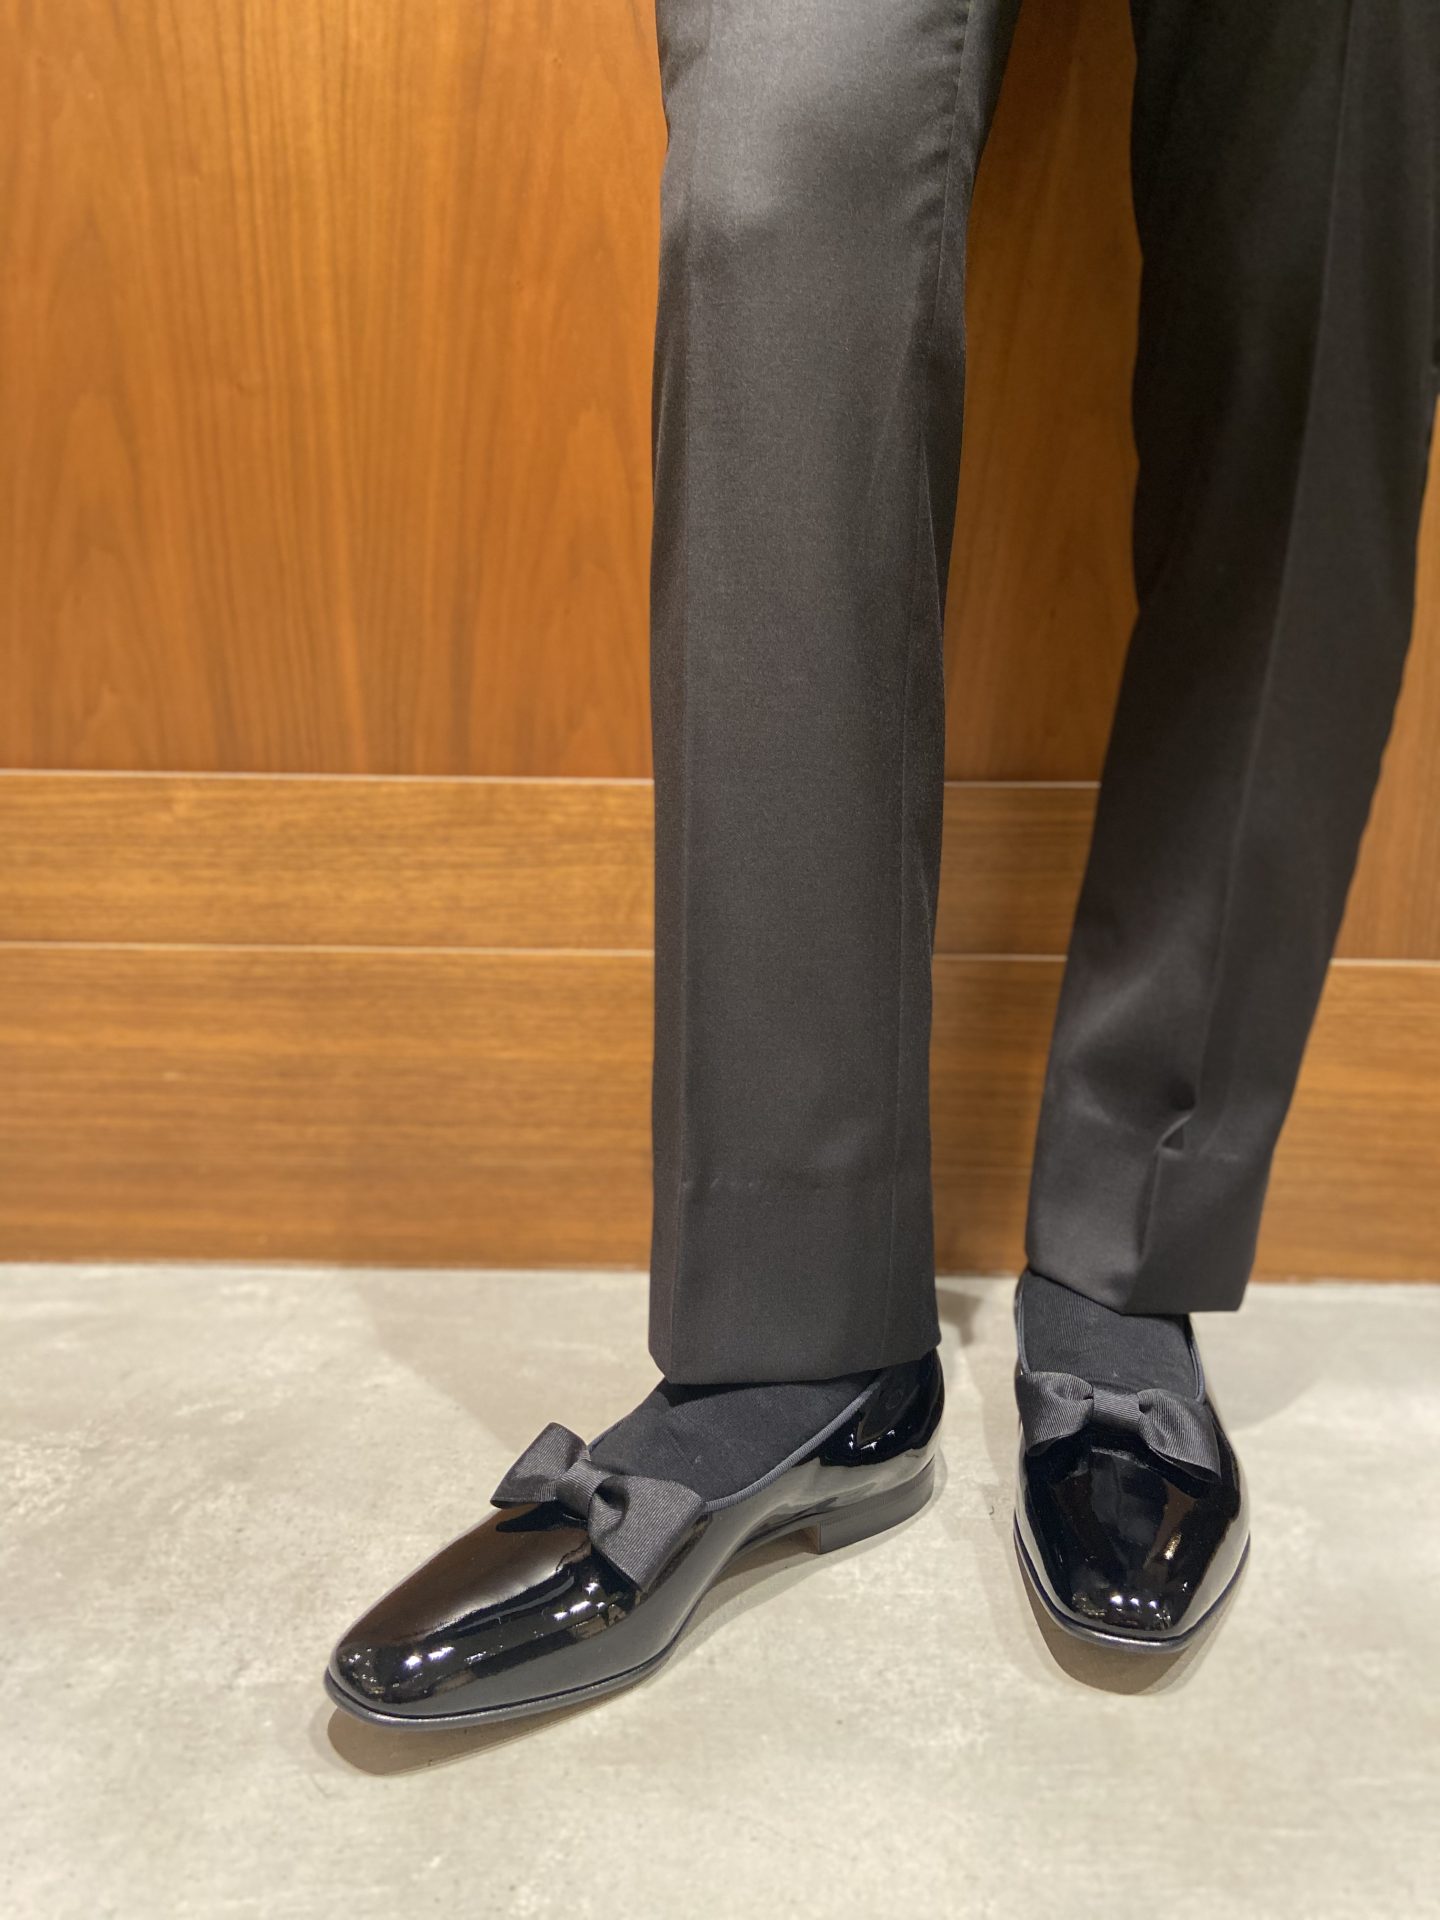 ザ・トリートドレッシング大阪店がお取り扱いしている英国の革靴ブランド最高峰のエドワードグリーンのエナメルパンプス